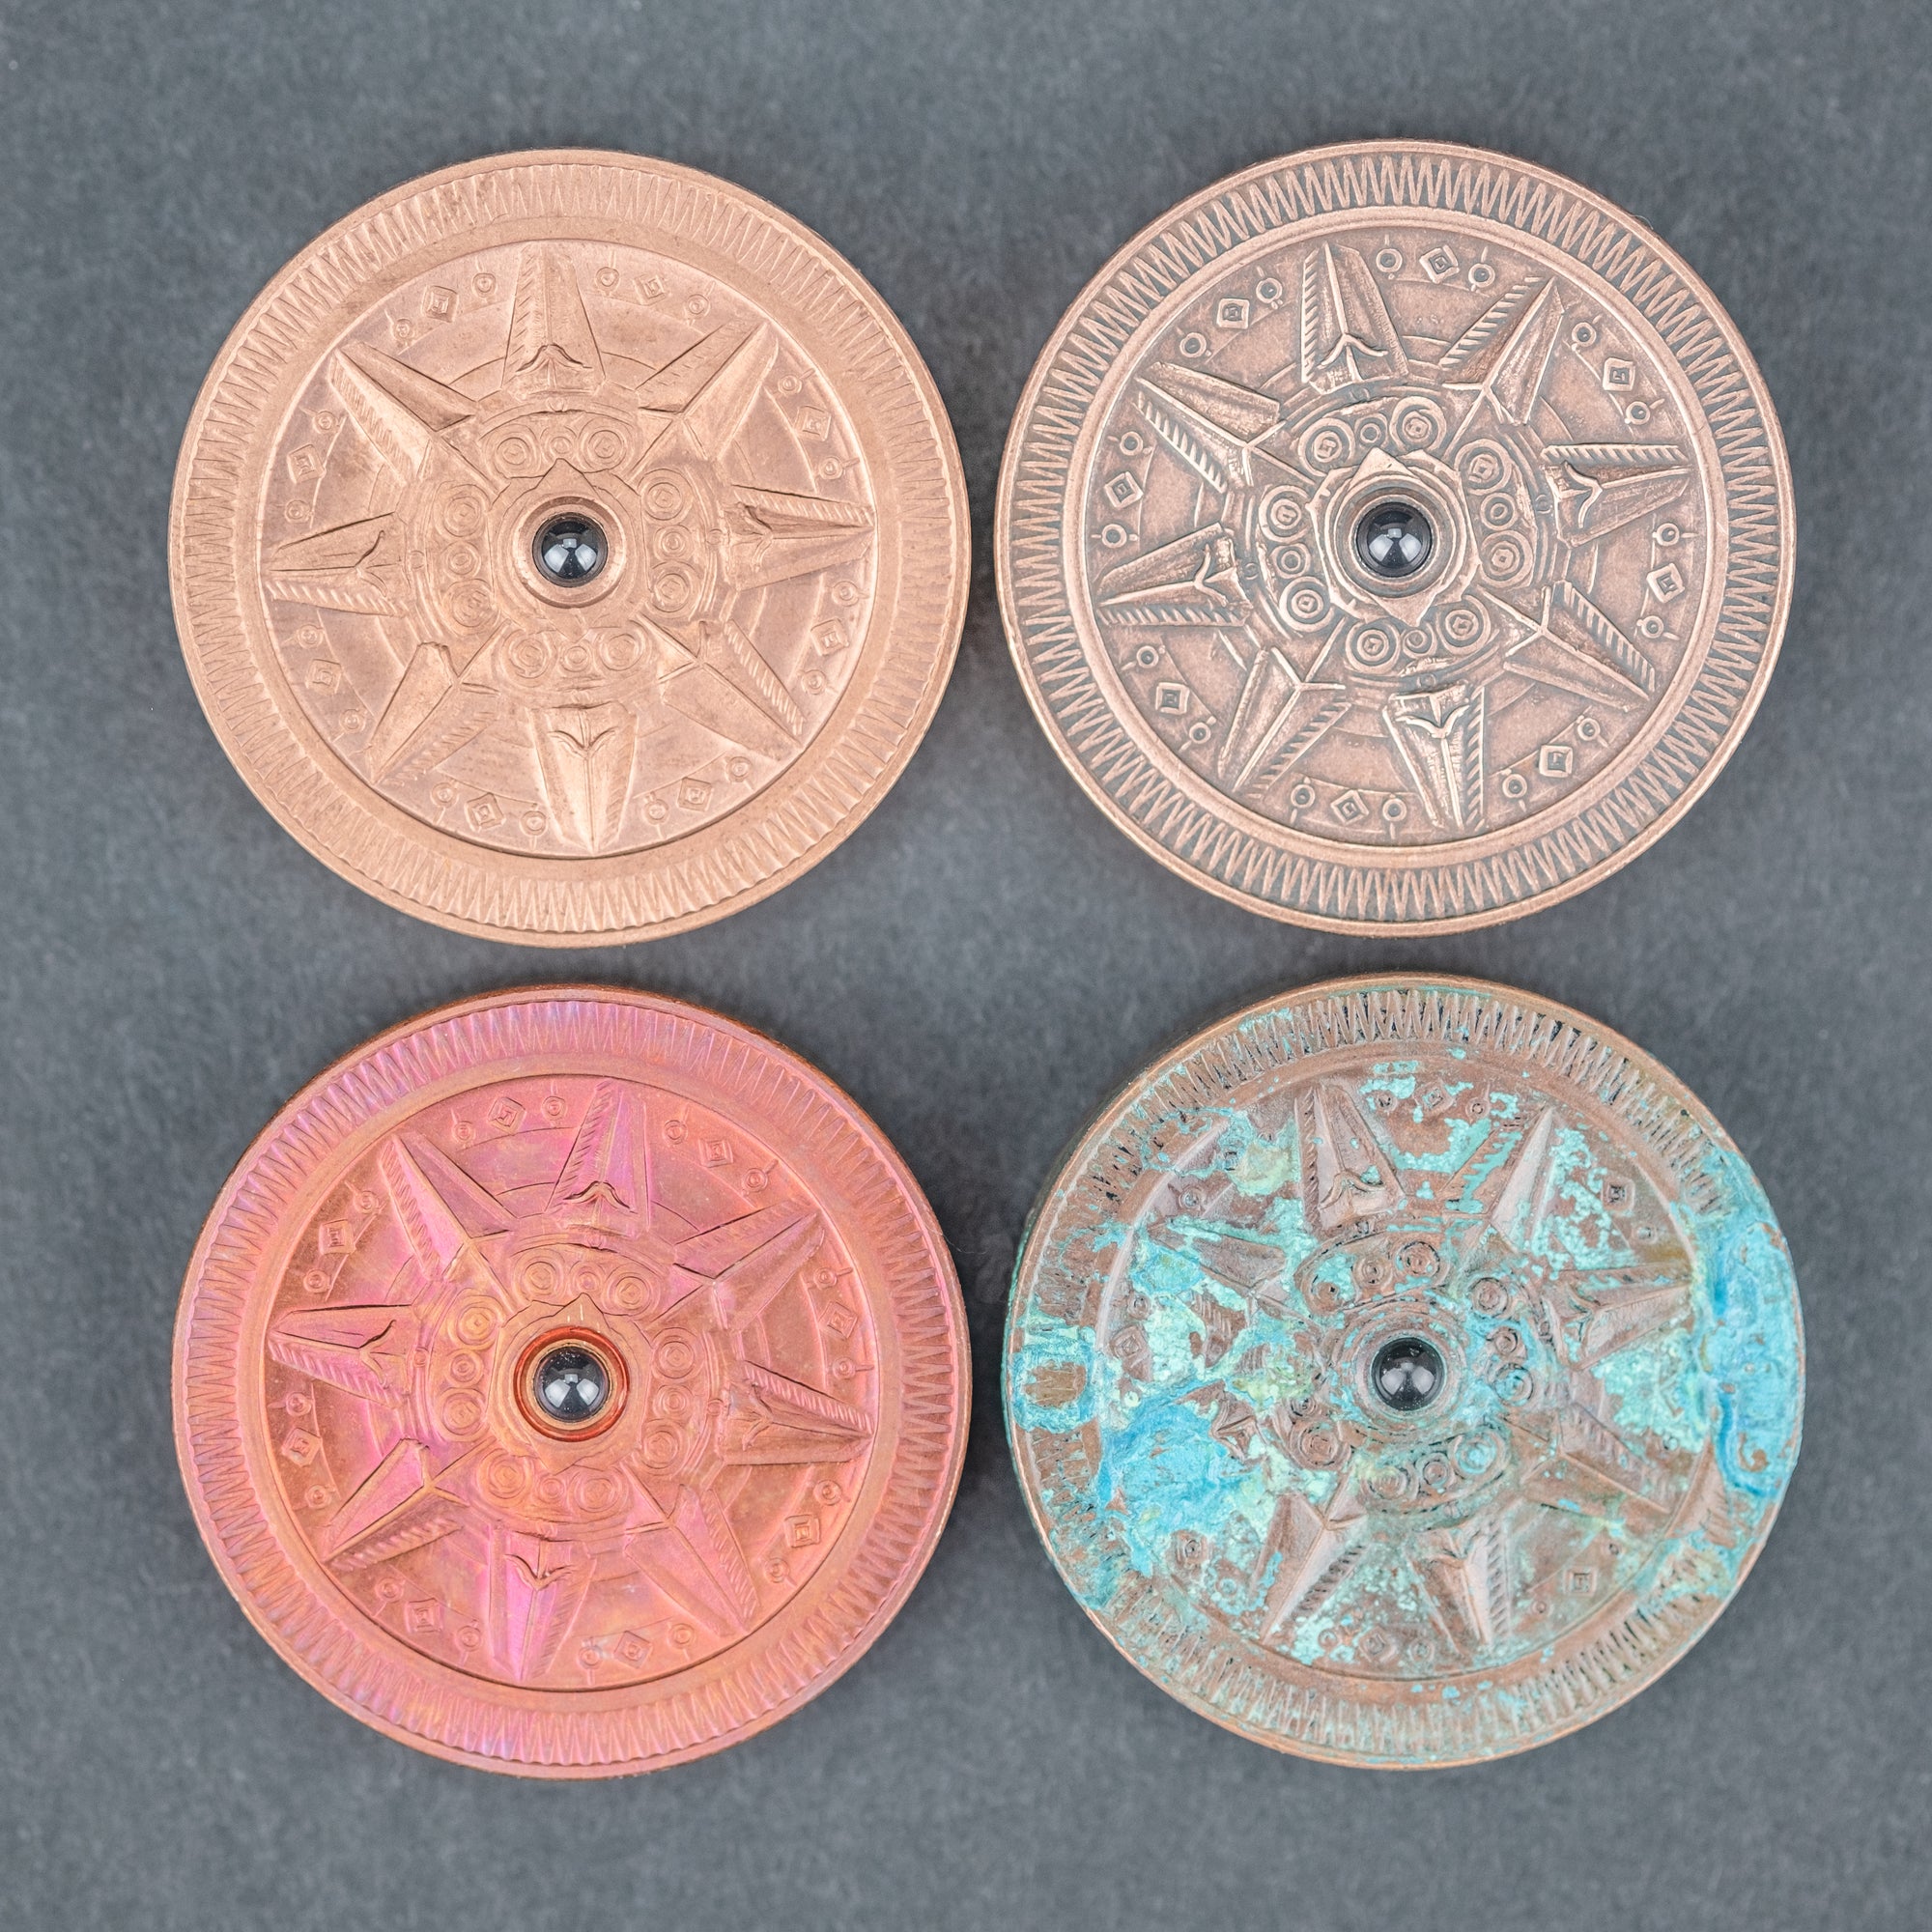 True North Spin Coin – J. L. Lawson & Co.